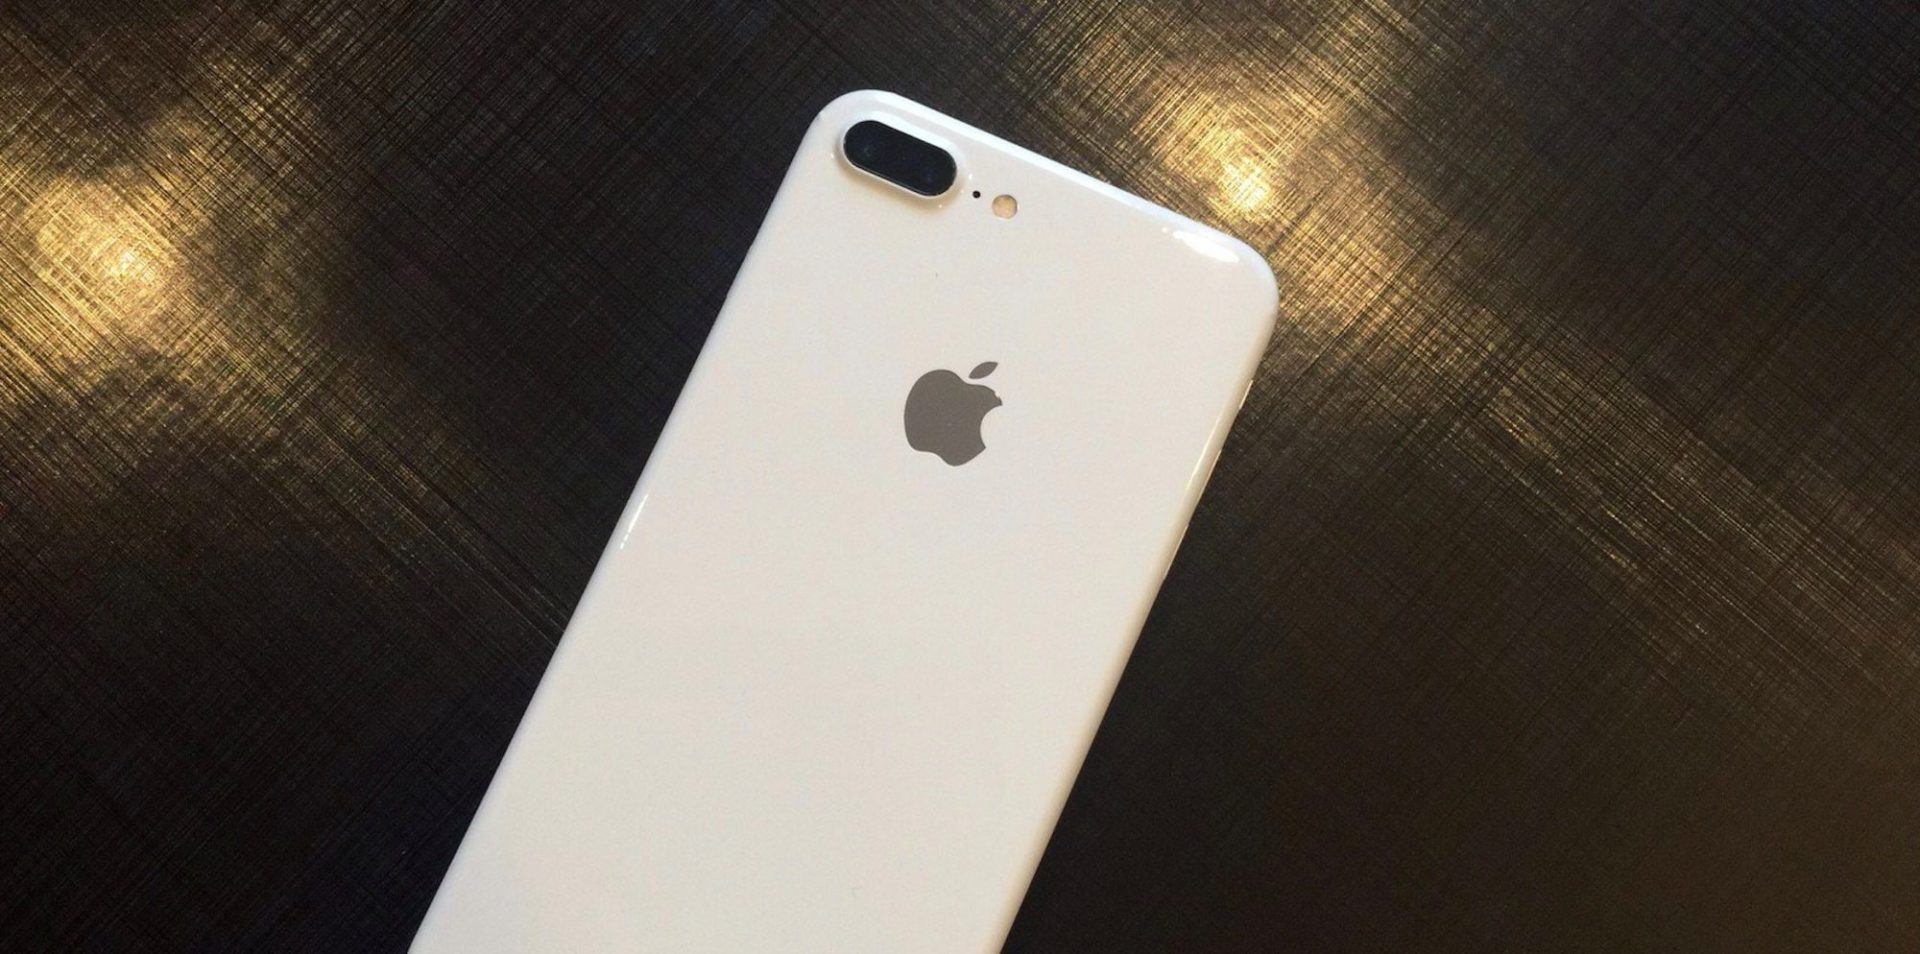 เผยคลิปยลโฉม iPhone 7/7 Plus สีขาว Jet White ลุ้นอาจได้เห็นวางขายจริงปีหน้า